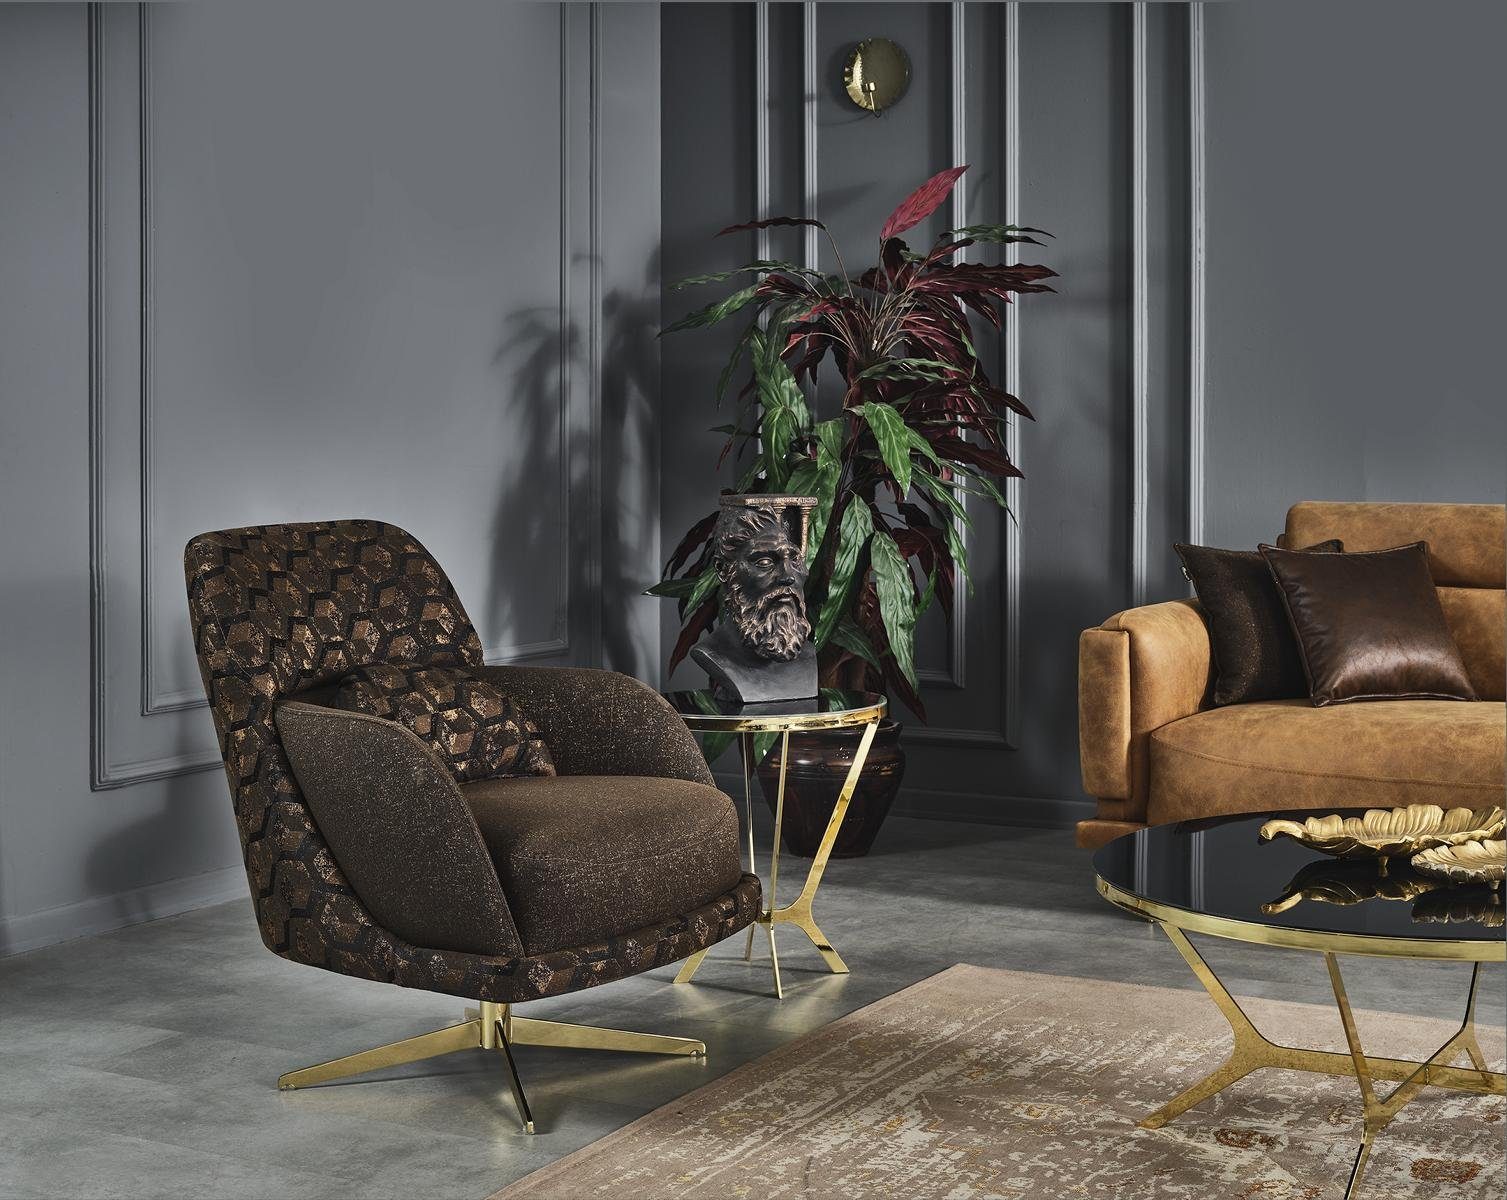 JVmoebel Sessel Wohnzimmer Sessel Design Couch Luxus Polster Möbel Einsitzer Möbel